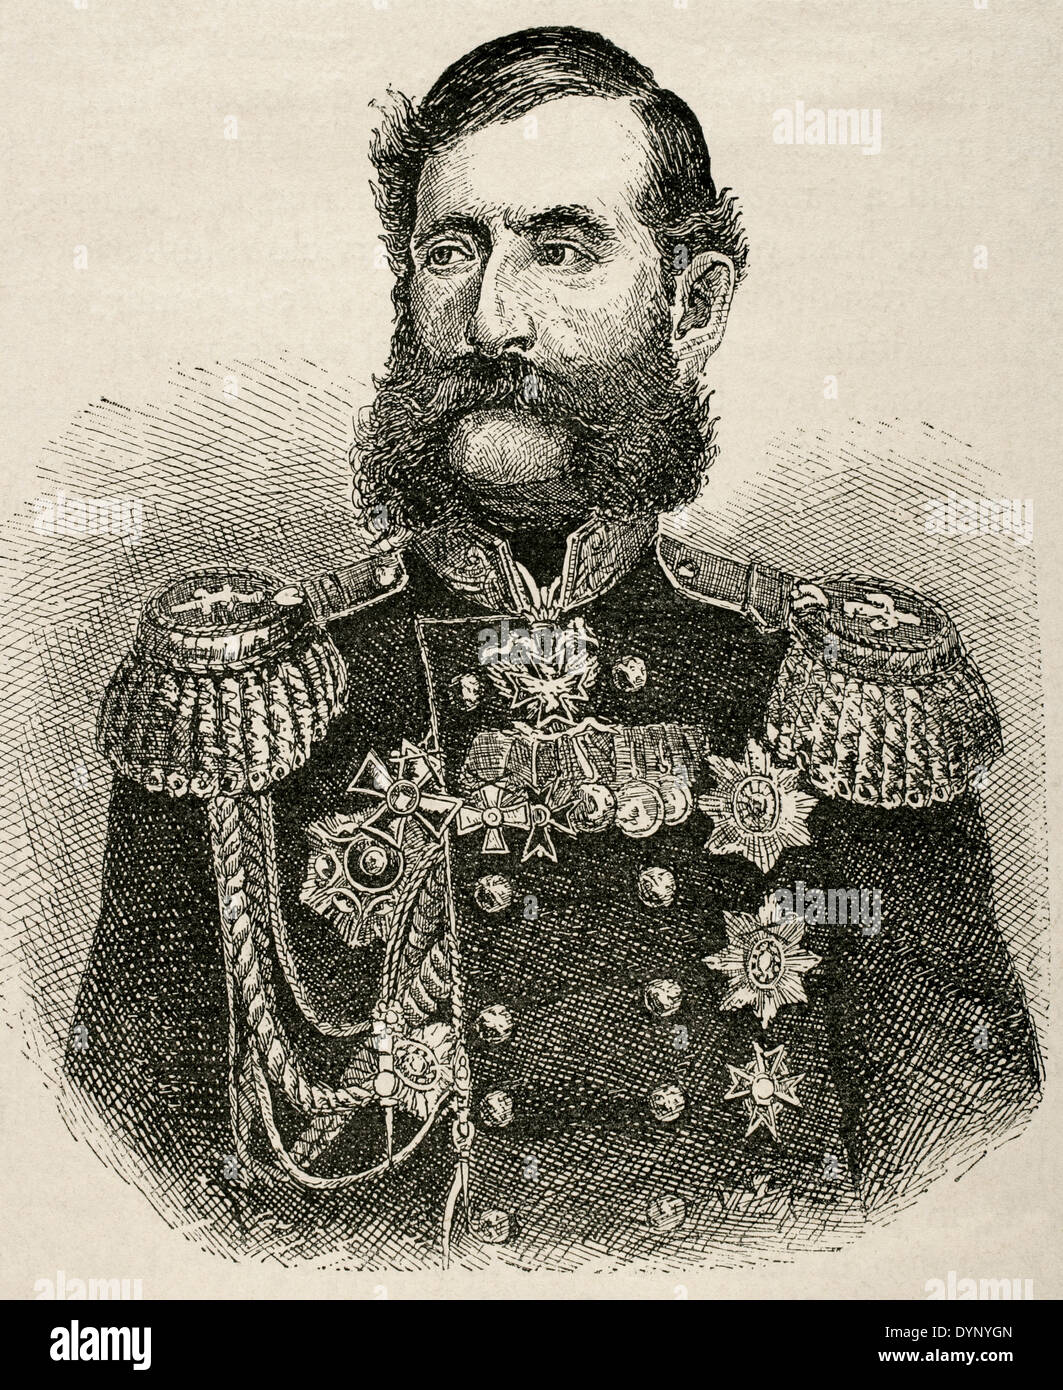 Michail Loris-Melikov (1826-1888). Russisch-armenischen Staatsmann. Gravur. Universalgeschichte, 1881. Stockfoto